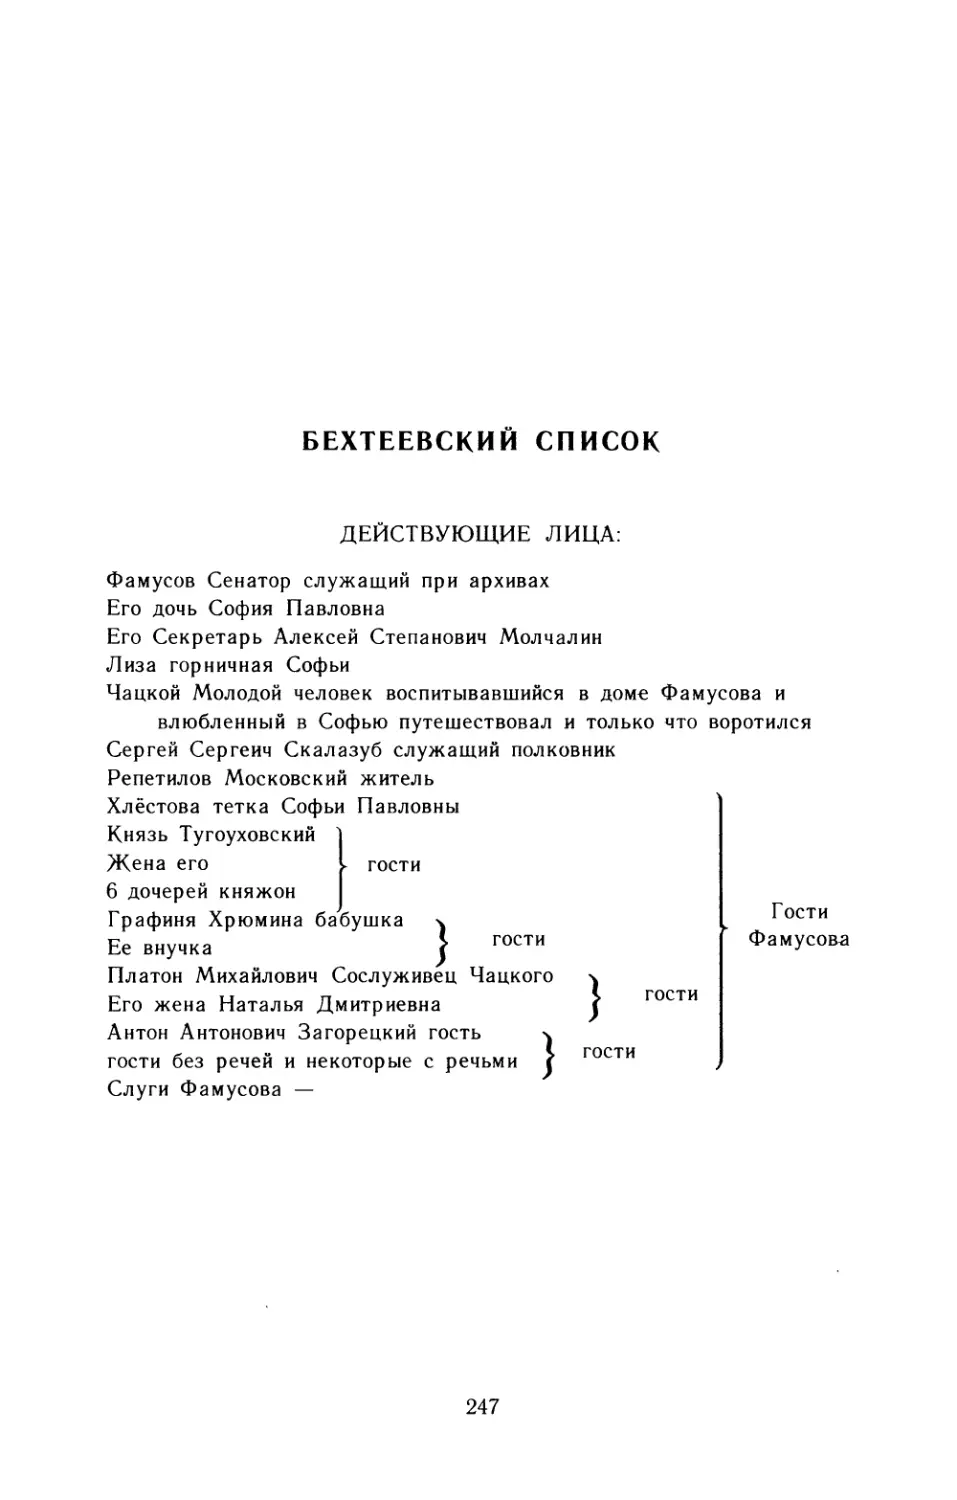 Бехтеевский список